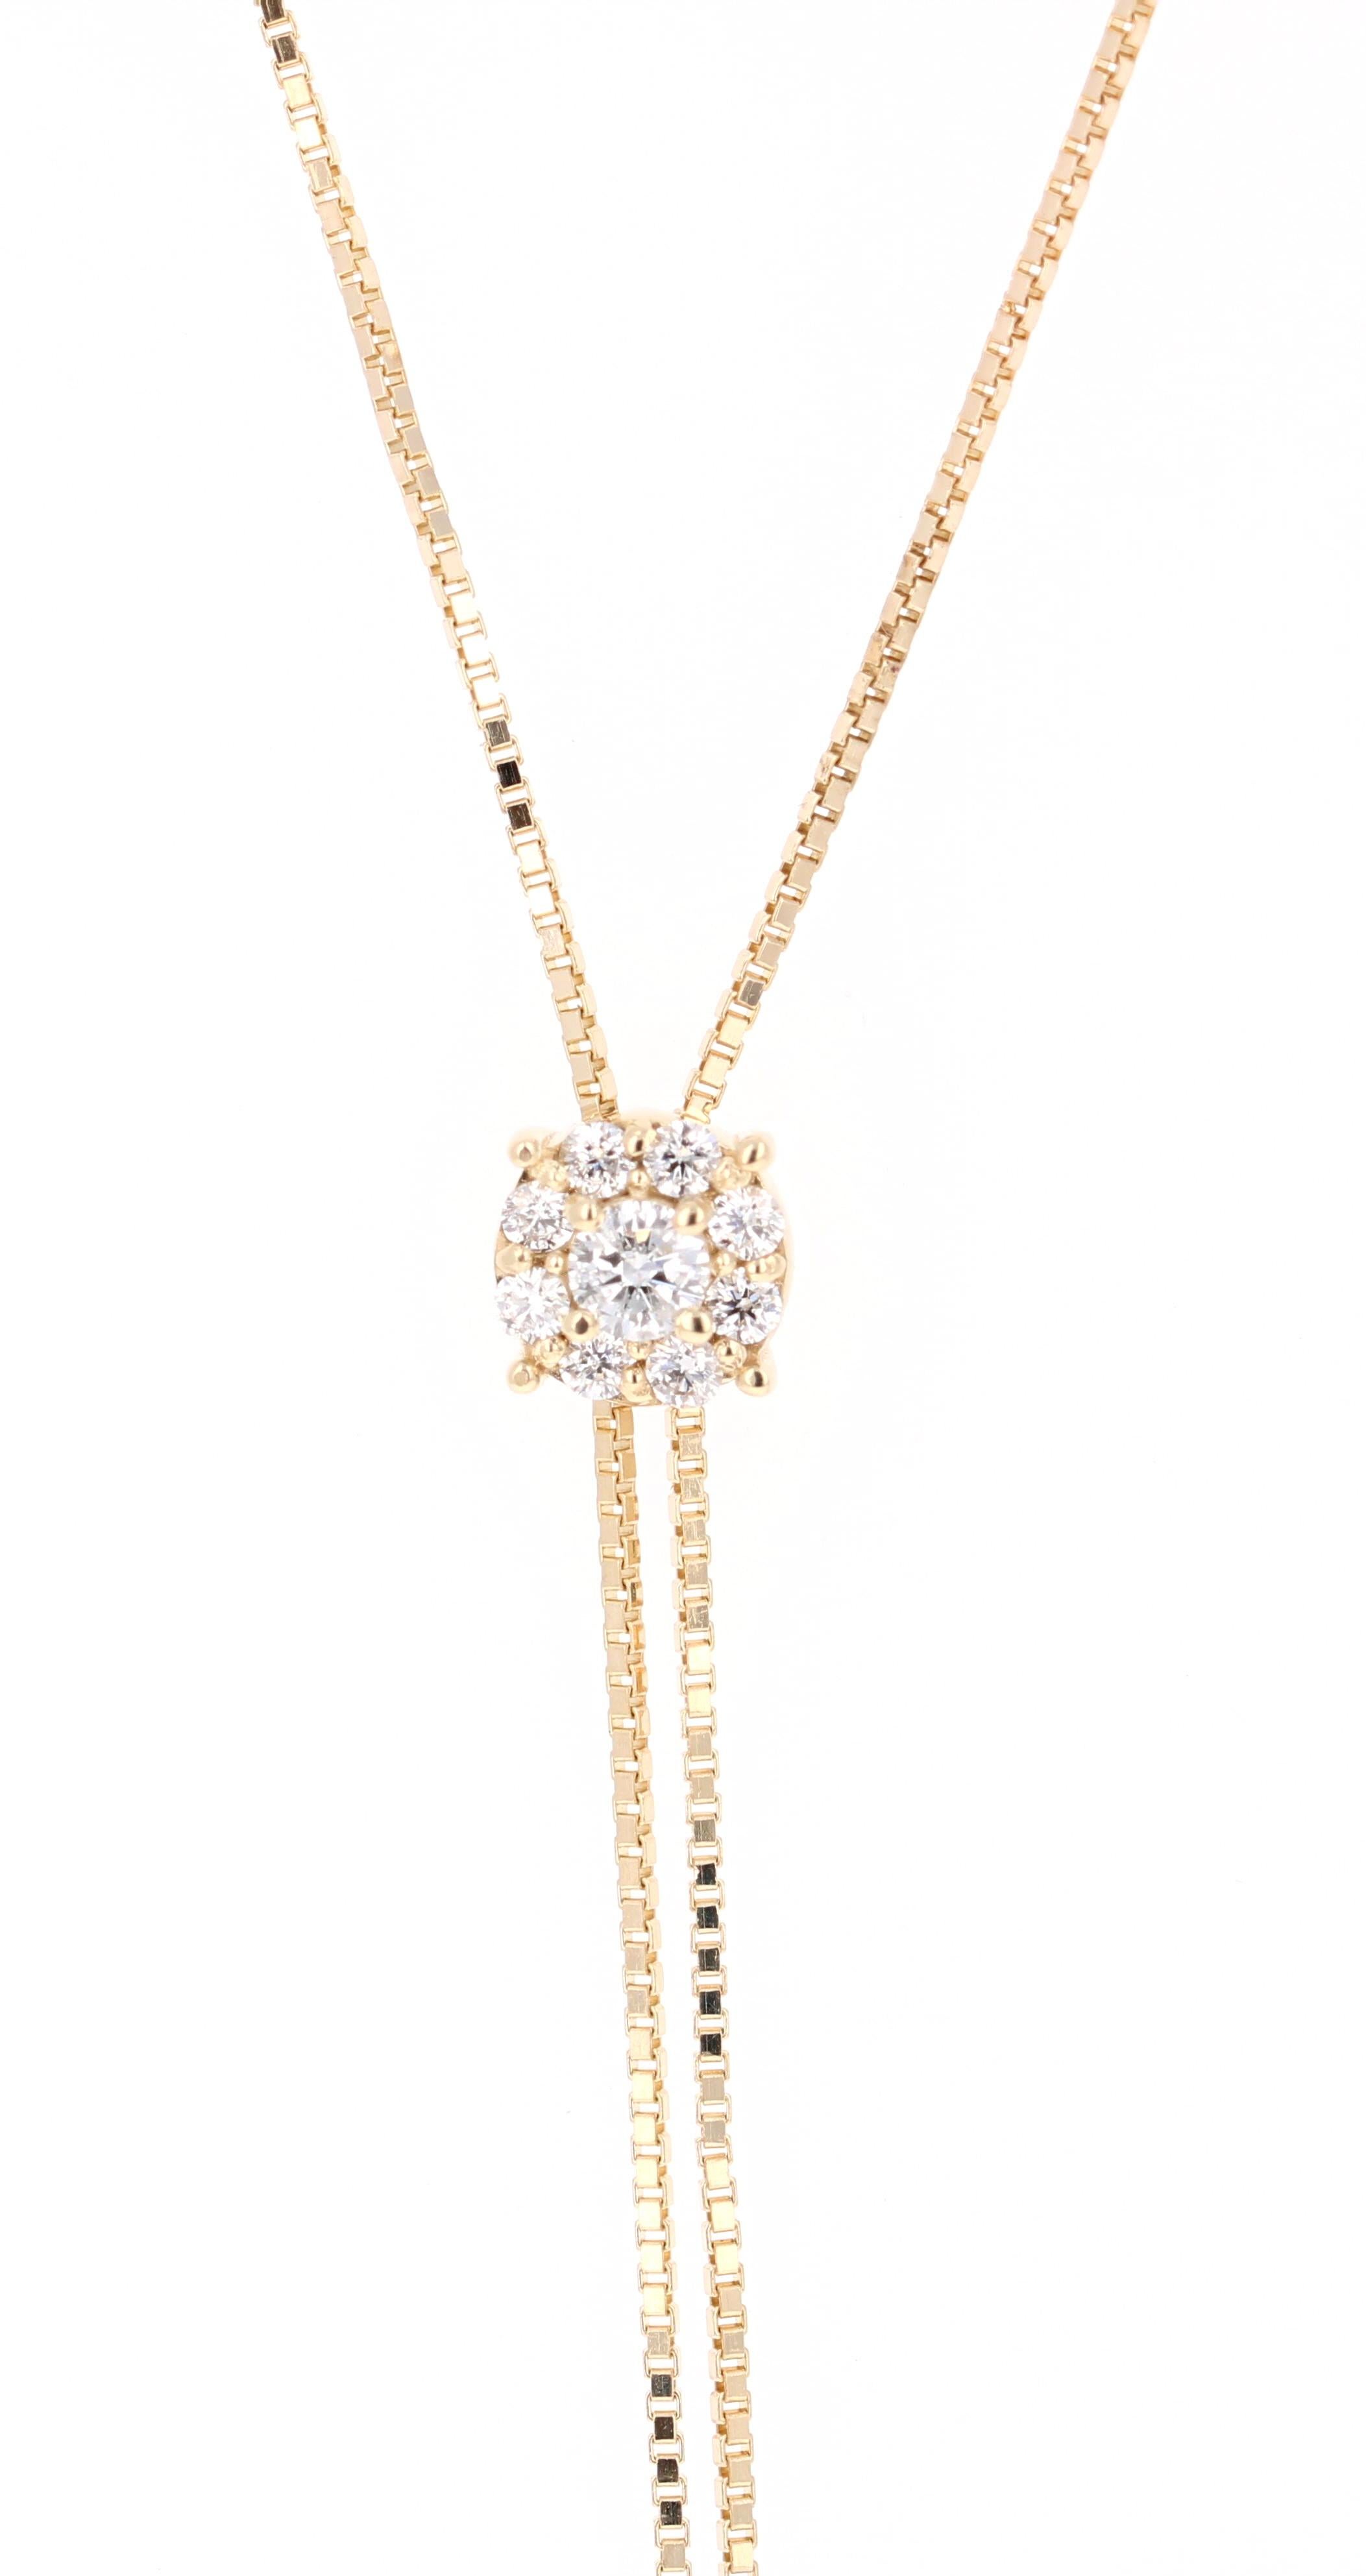 Magnifique, élégant et tendance, ce collier de style Lariat !  Il comporte 9 diamants de taille ronde (pureté : SI, couleur : F) qui pèsent 0,40 carats. 

Il est magnifiquement façonné en or jaune 14 carats, pèse 5,8 grammes et mesure environ 20